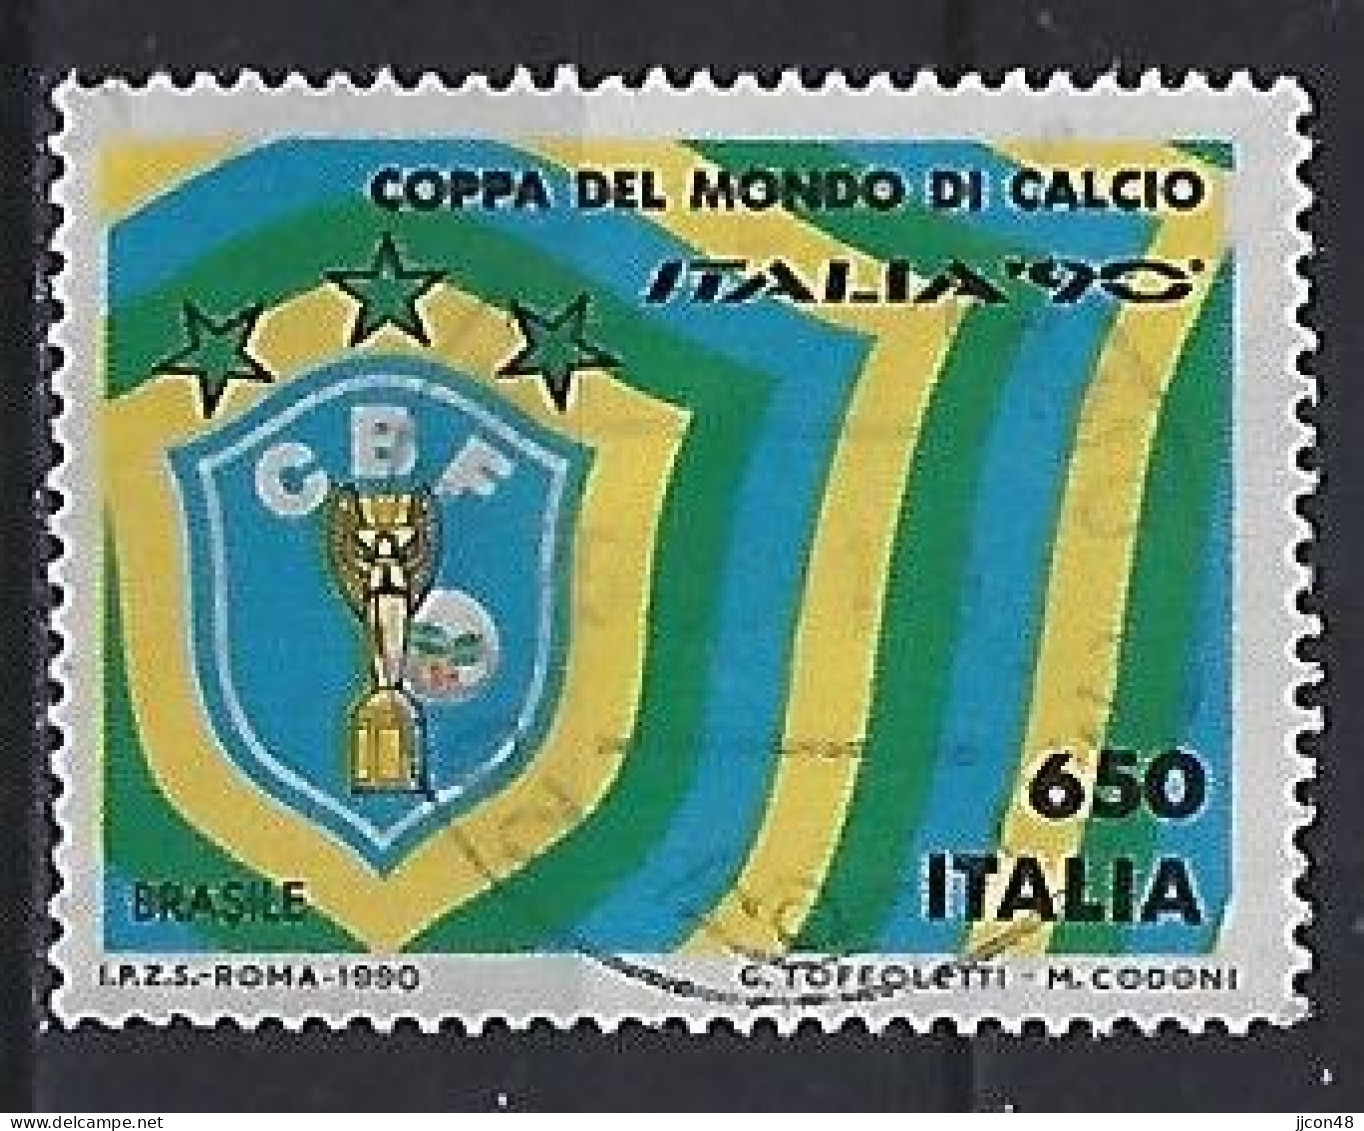 Italy 1990  Fussball-Weltmeisterschaft  (o) Mi.2117 - 1981-90: Oblitérés